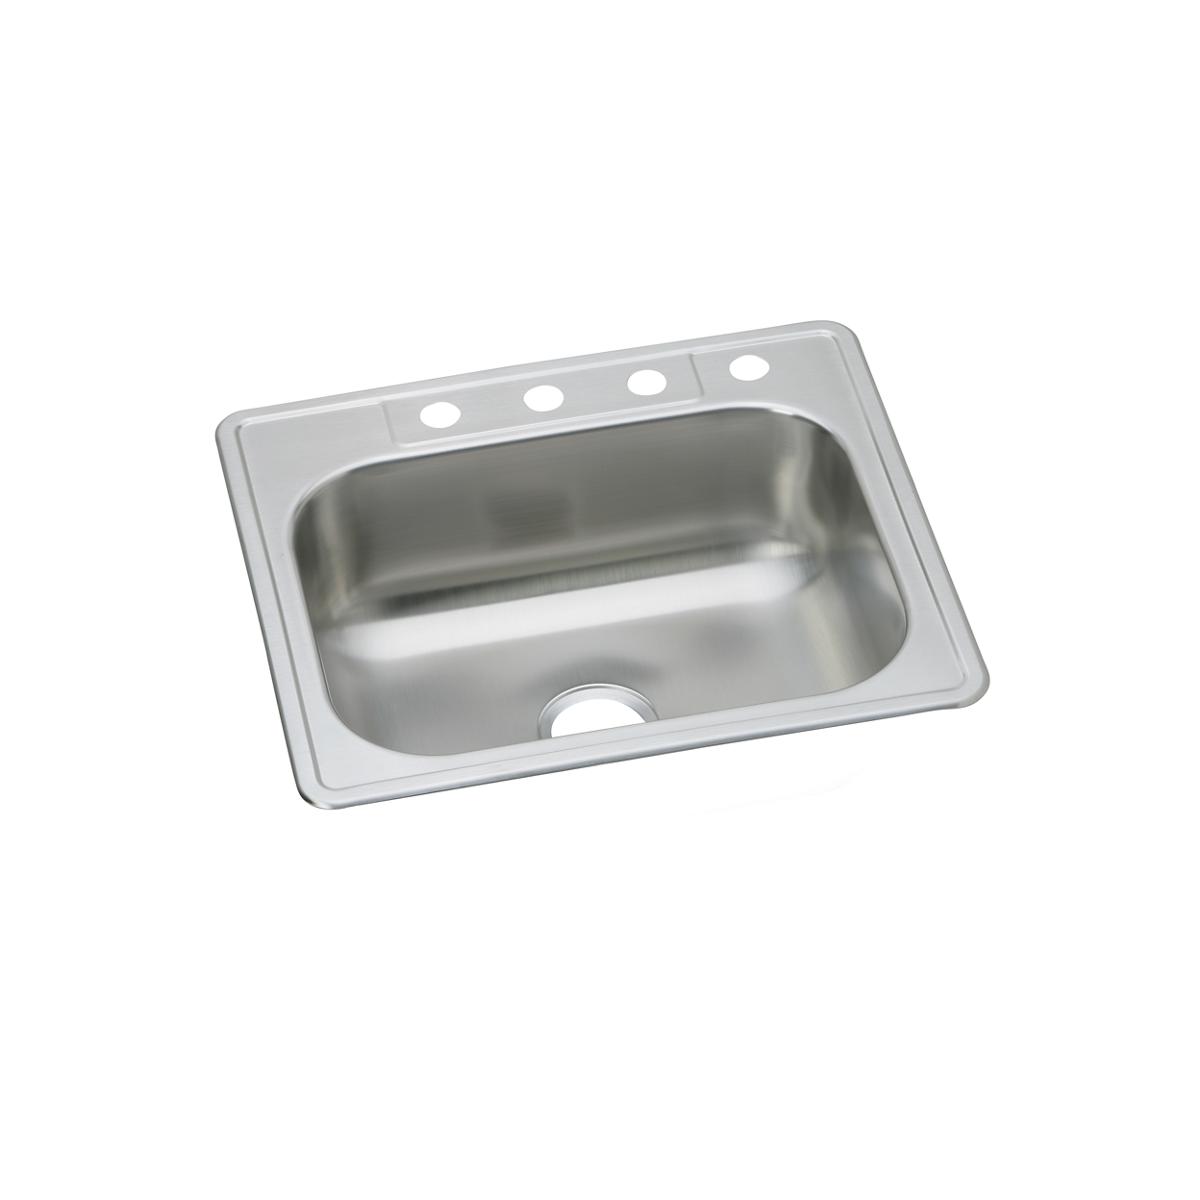 Elkay Stainless Steel Single Bowl Drop-in Sink 1165110